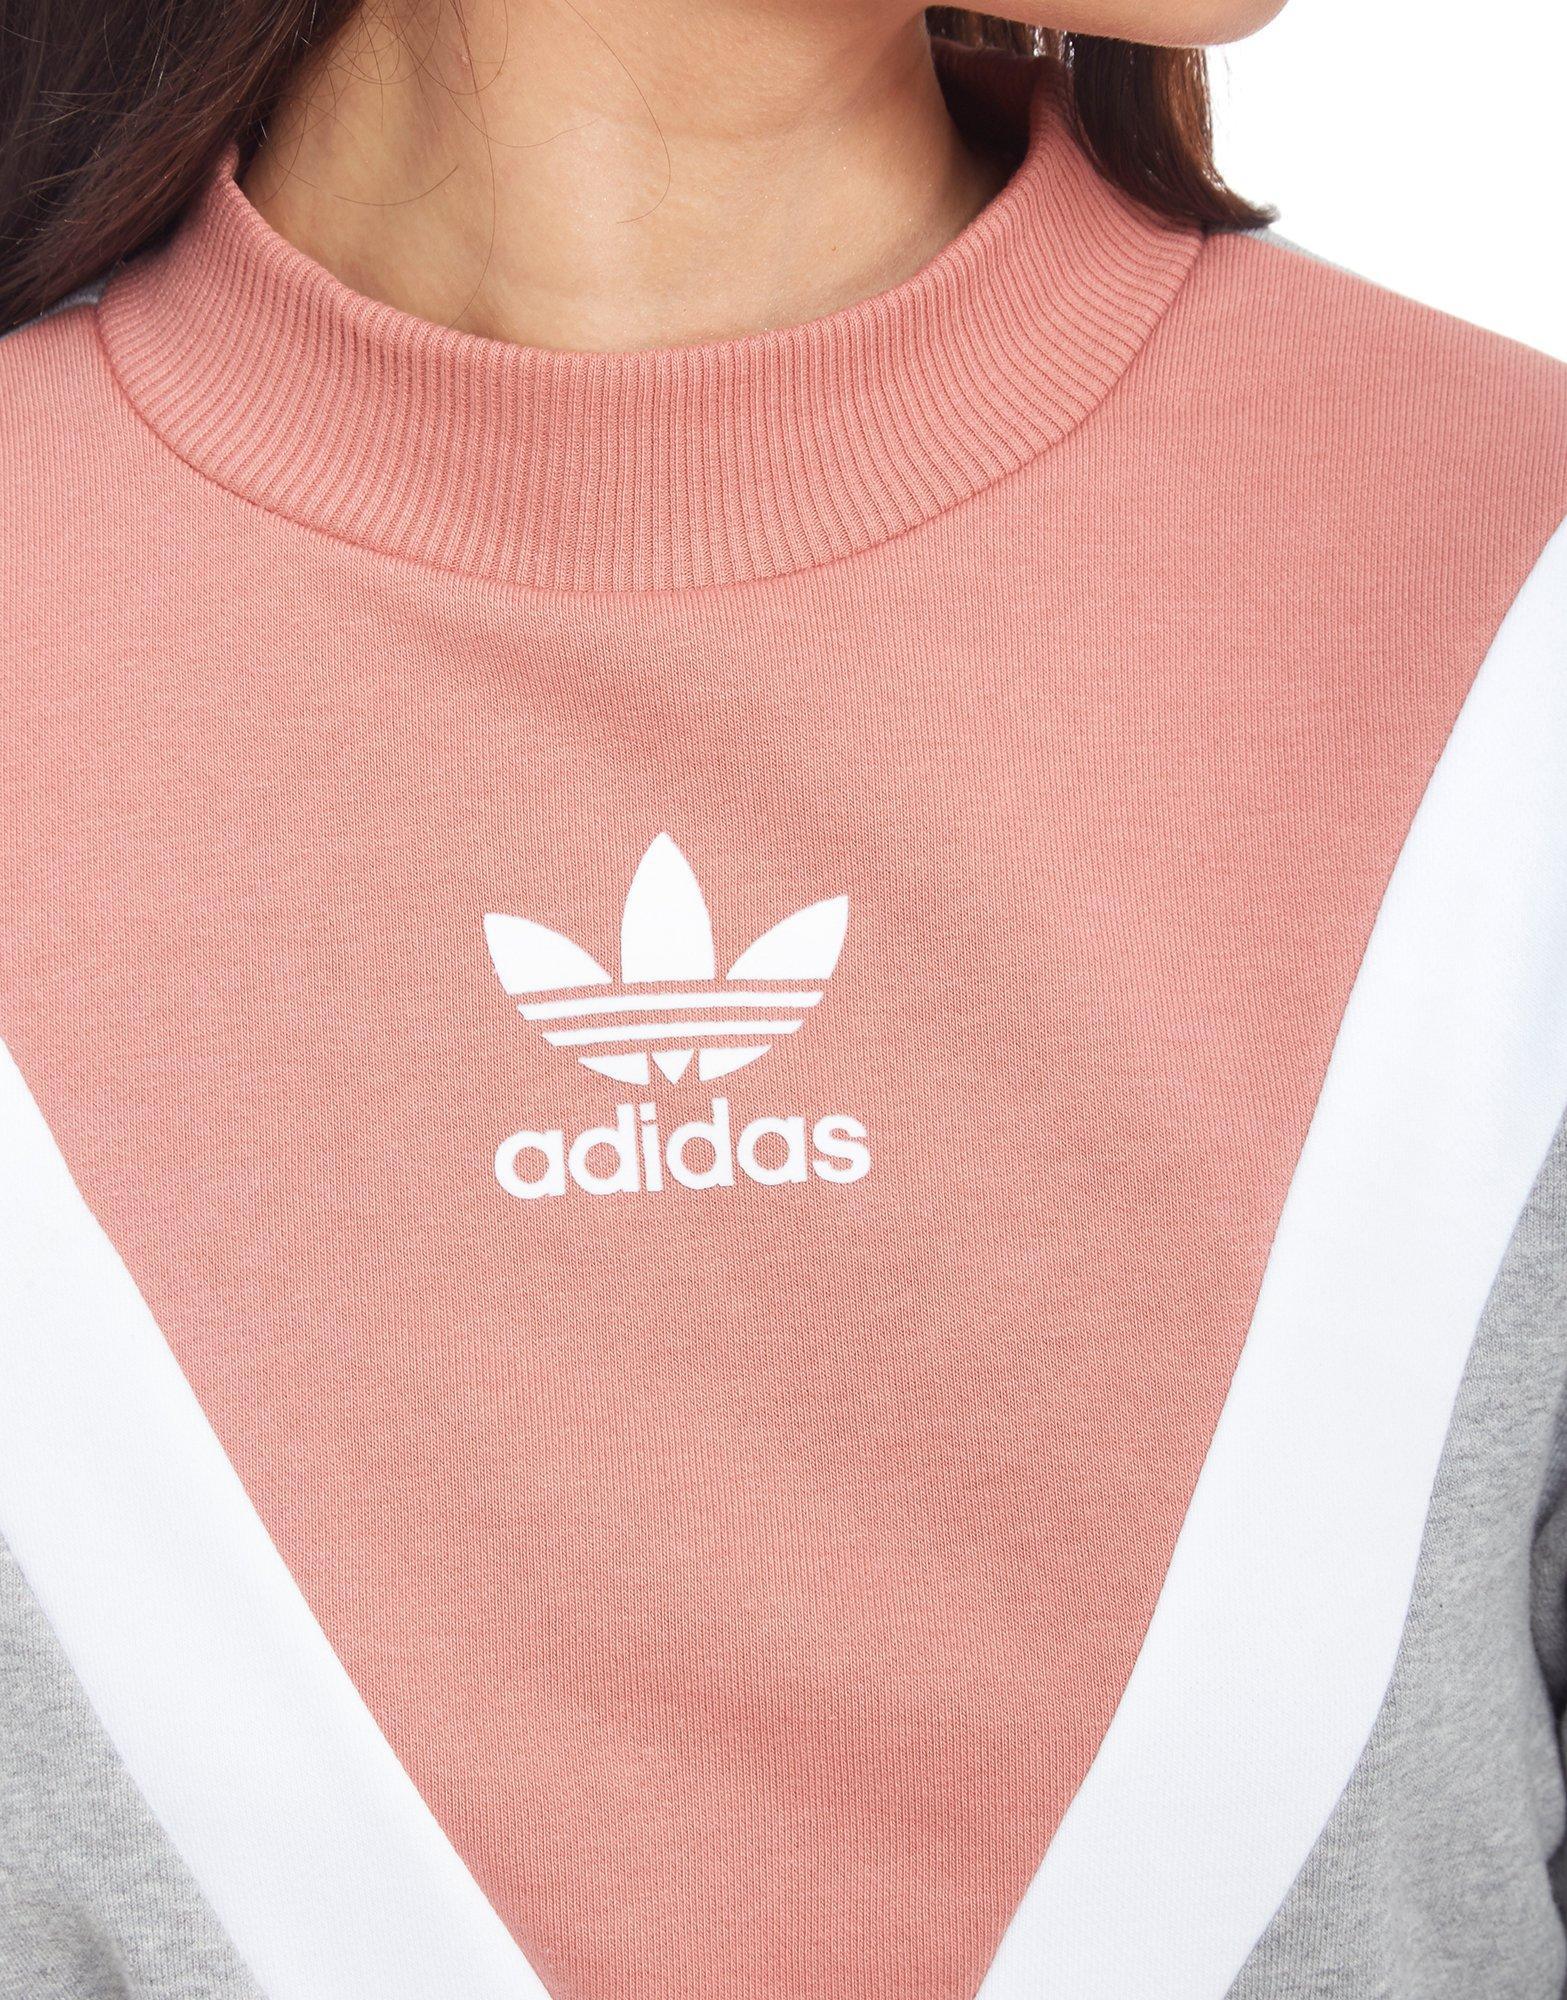 pink and grey adidas jumper